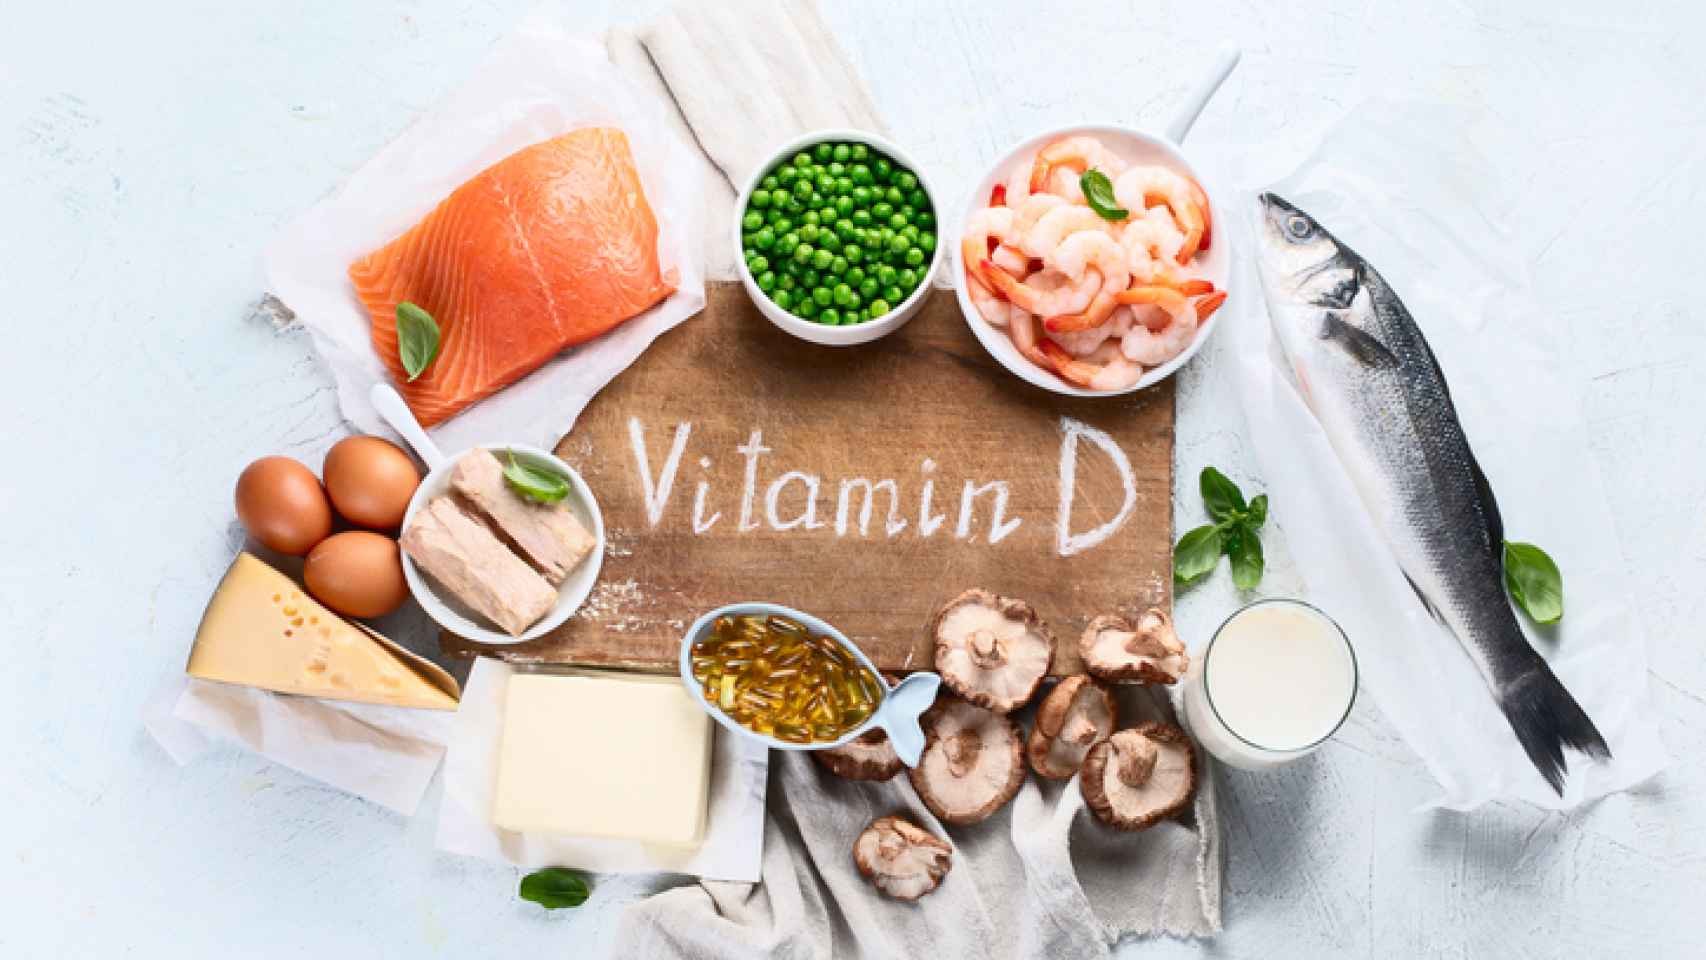 La ciudadanía del Estado tiene niveles más bajos de vitamina D que los nórdicos